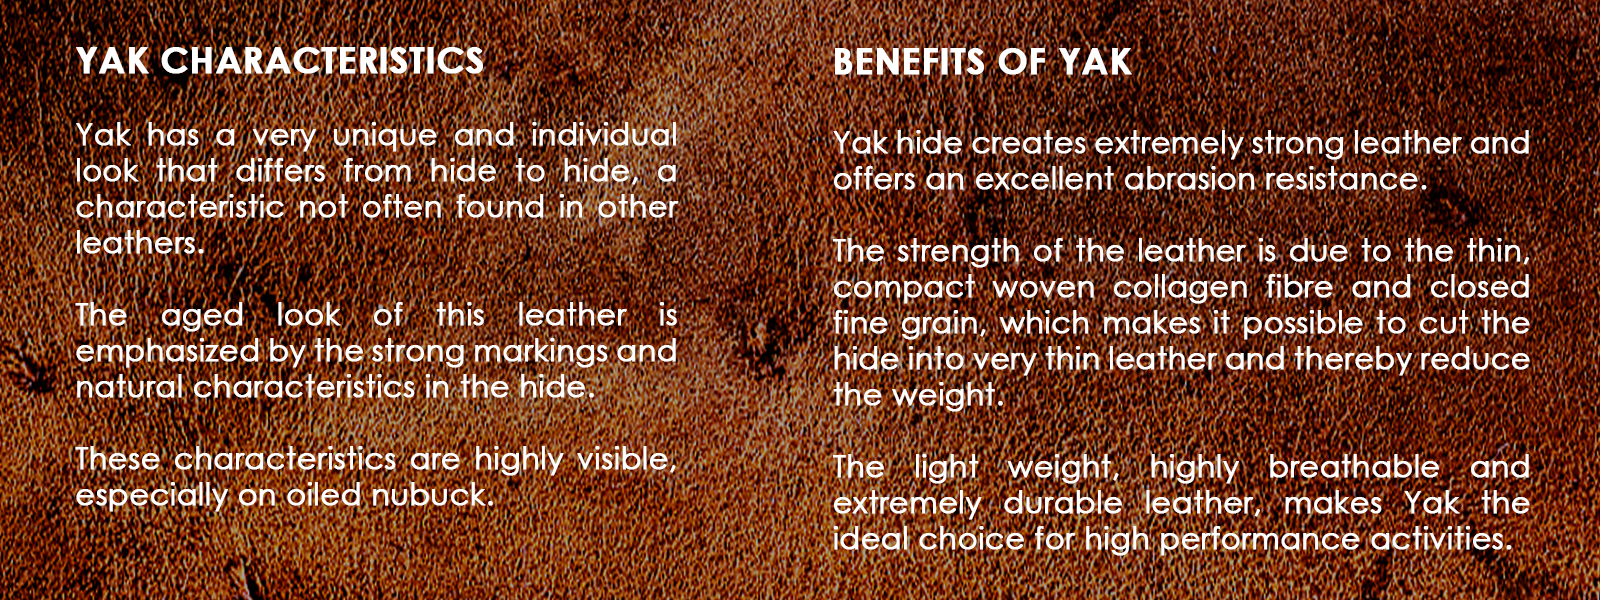 ECCO Yak Leather Characteristics and Benefits